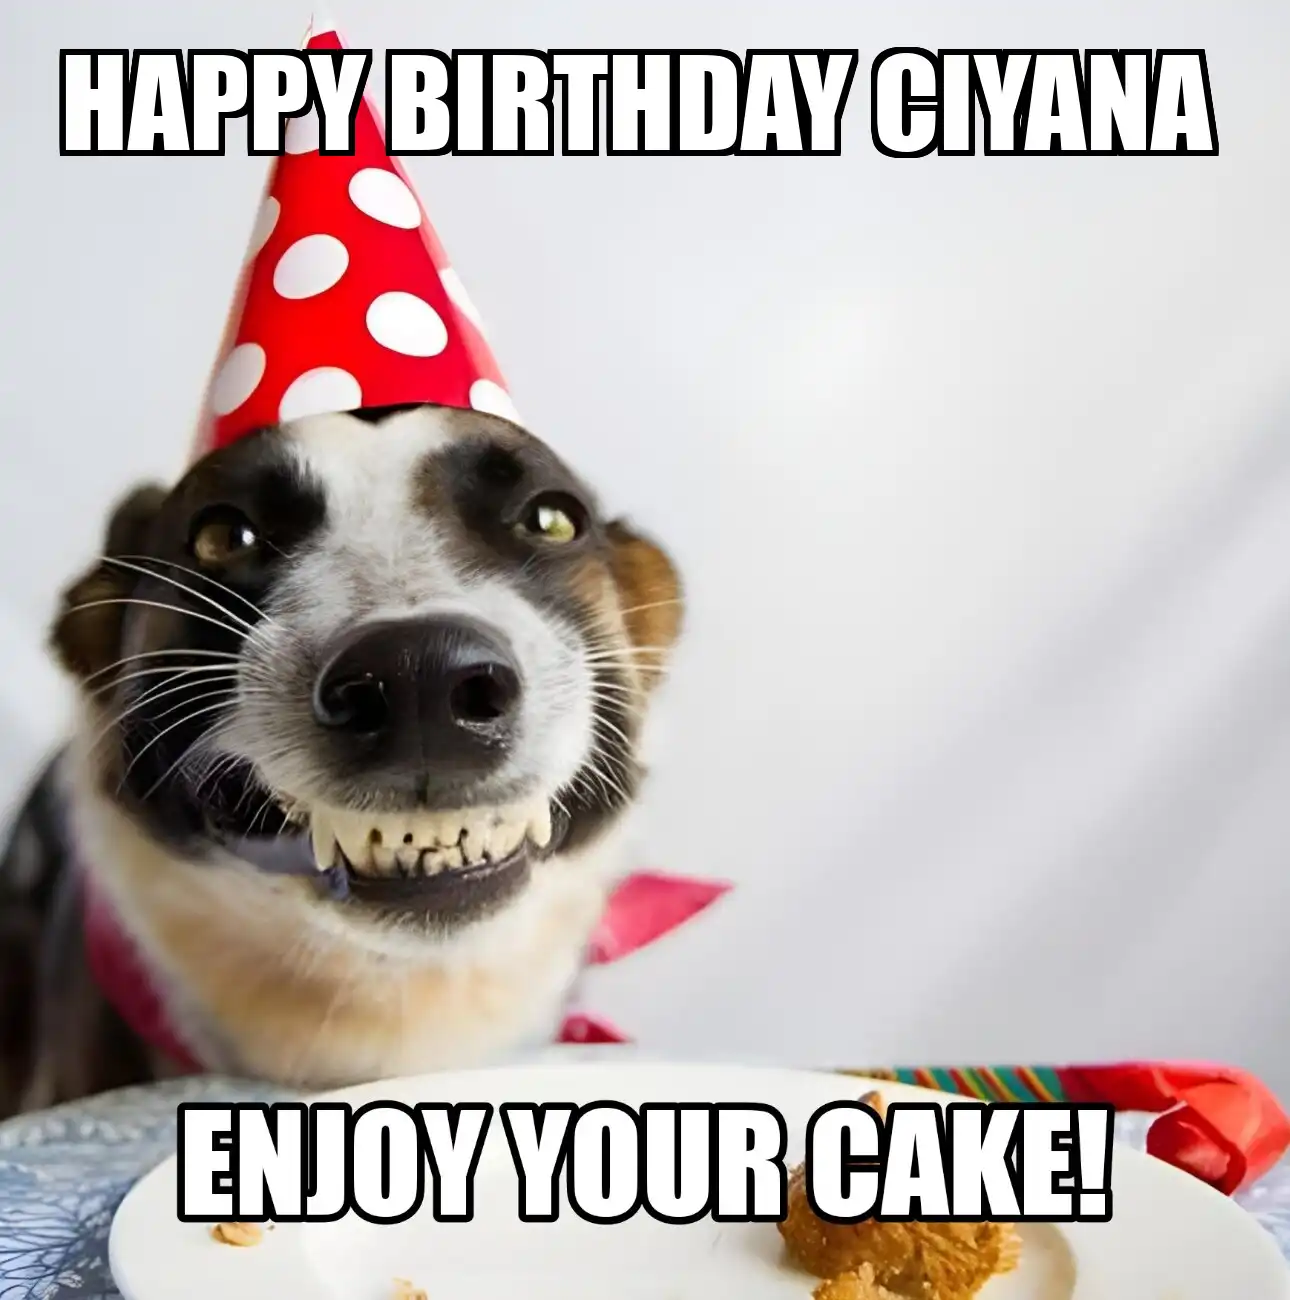 Happy Birthday Ciyana Enjoy Your Cake Dog Meme